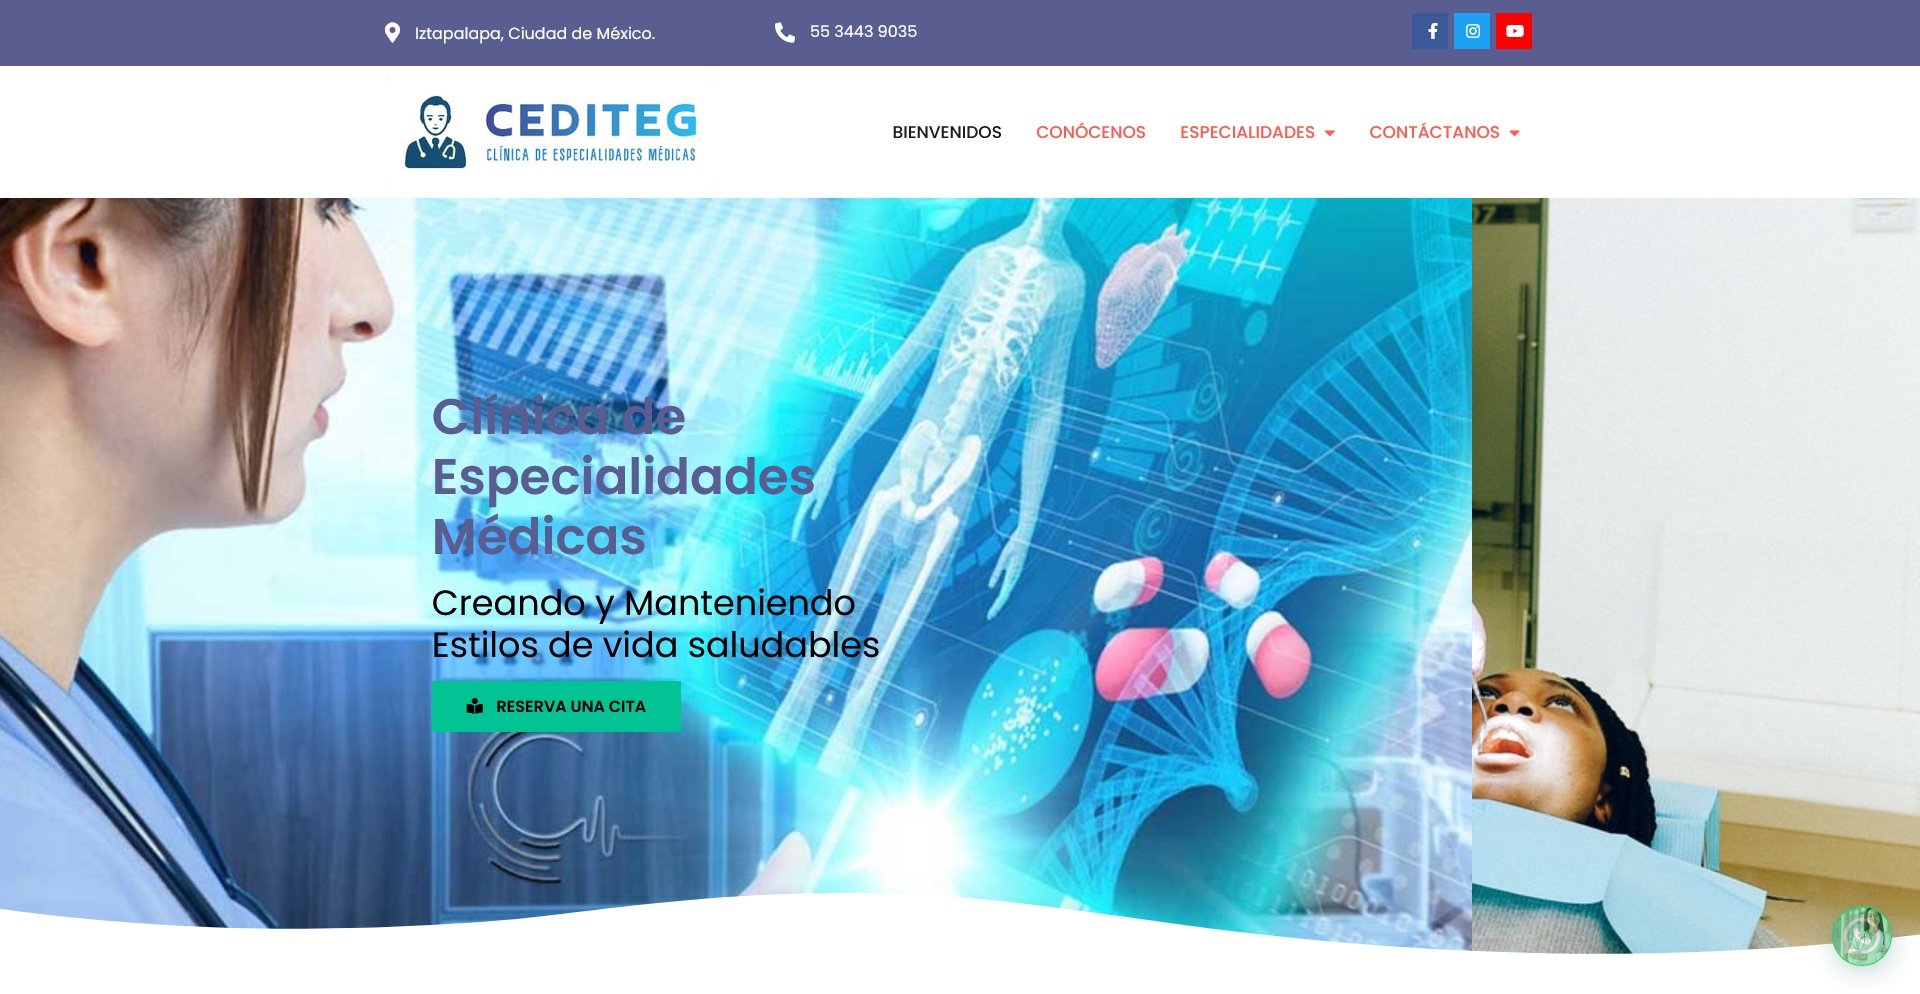 CEDITEG – Clínica de Especialidades Médicas - dentalcediteg.com